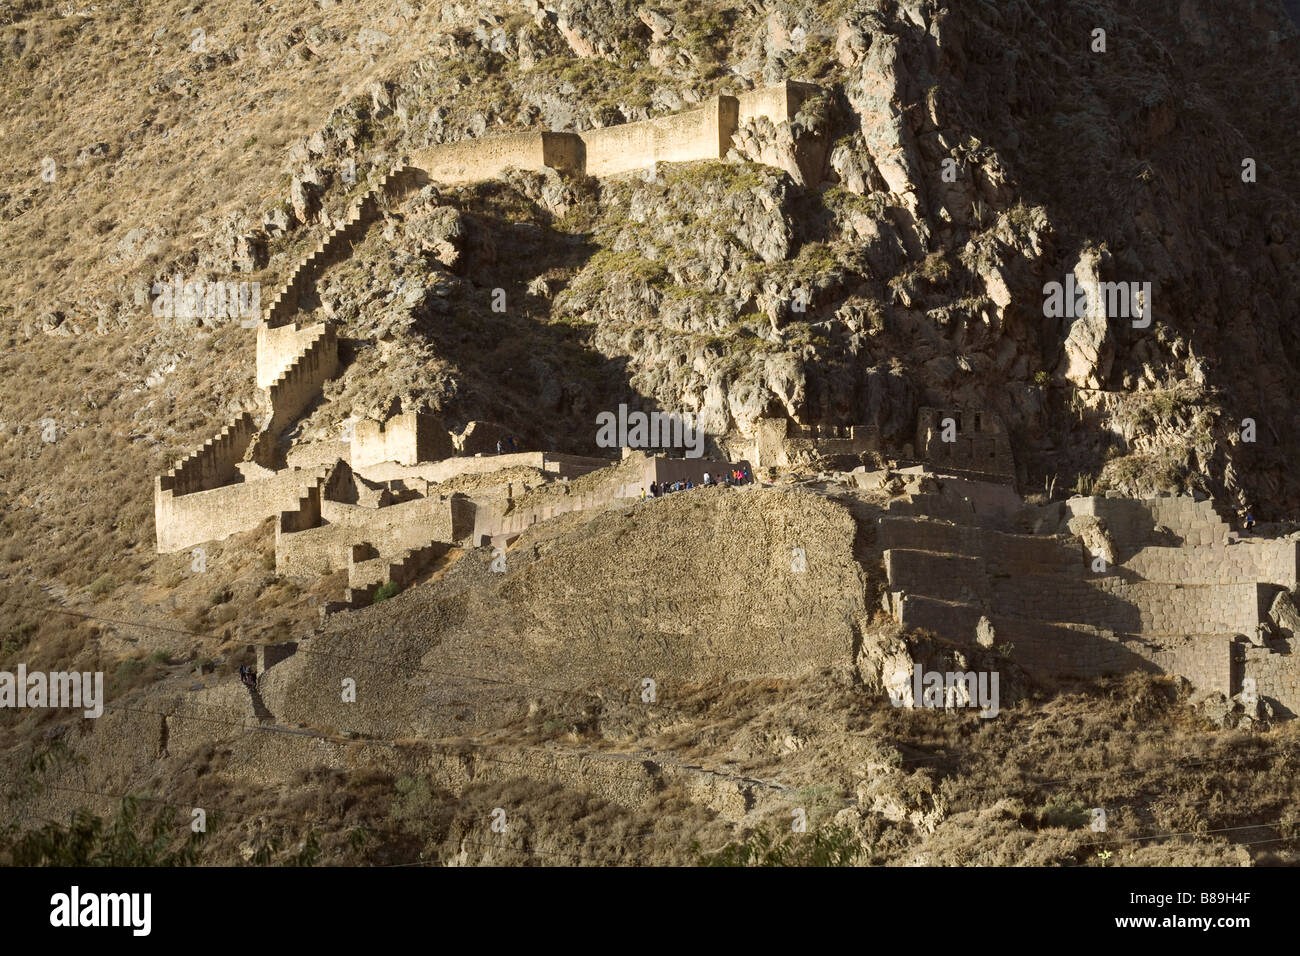 The Inca ruins at Ollantaytambo, Peru Stock Photo